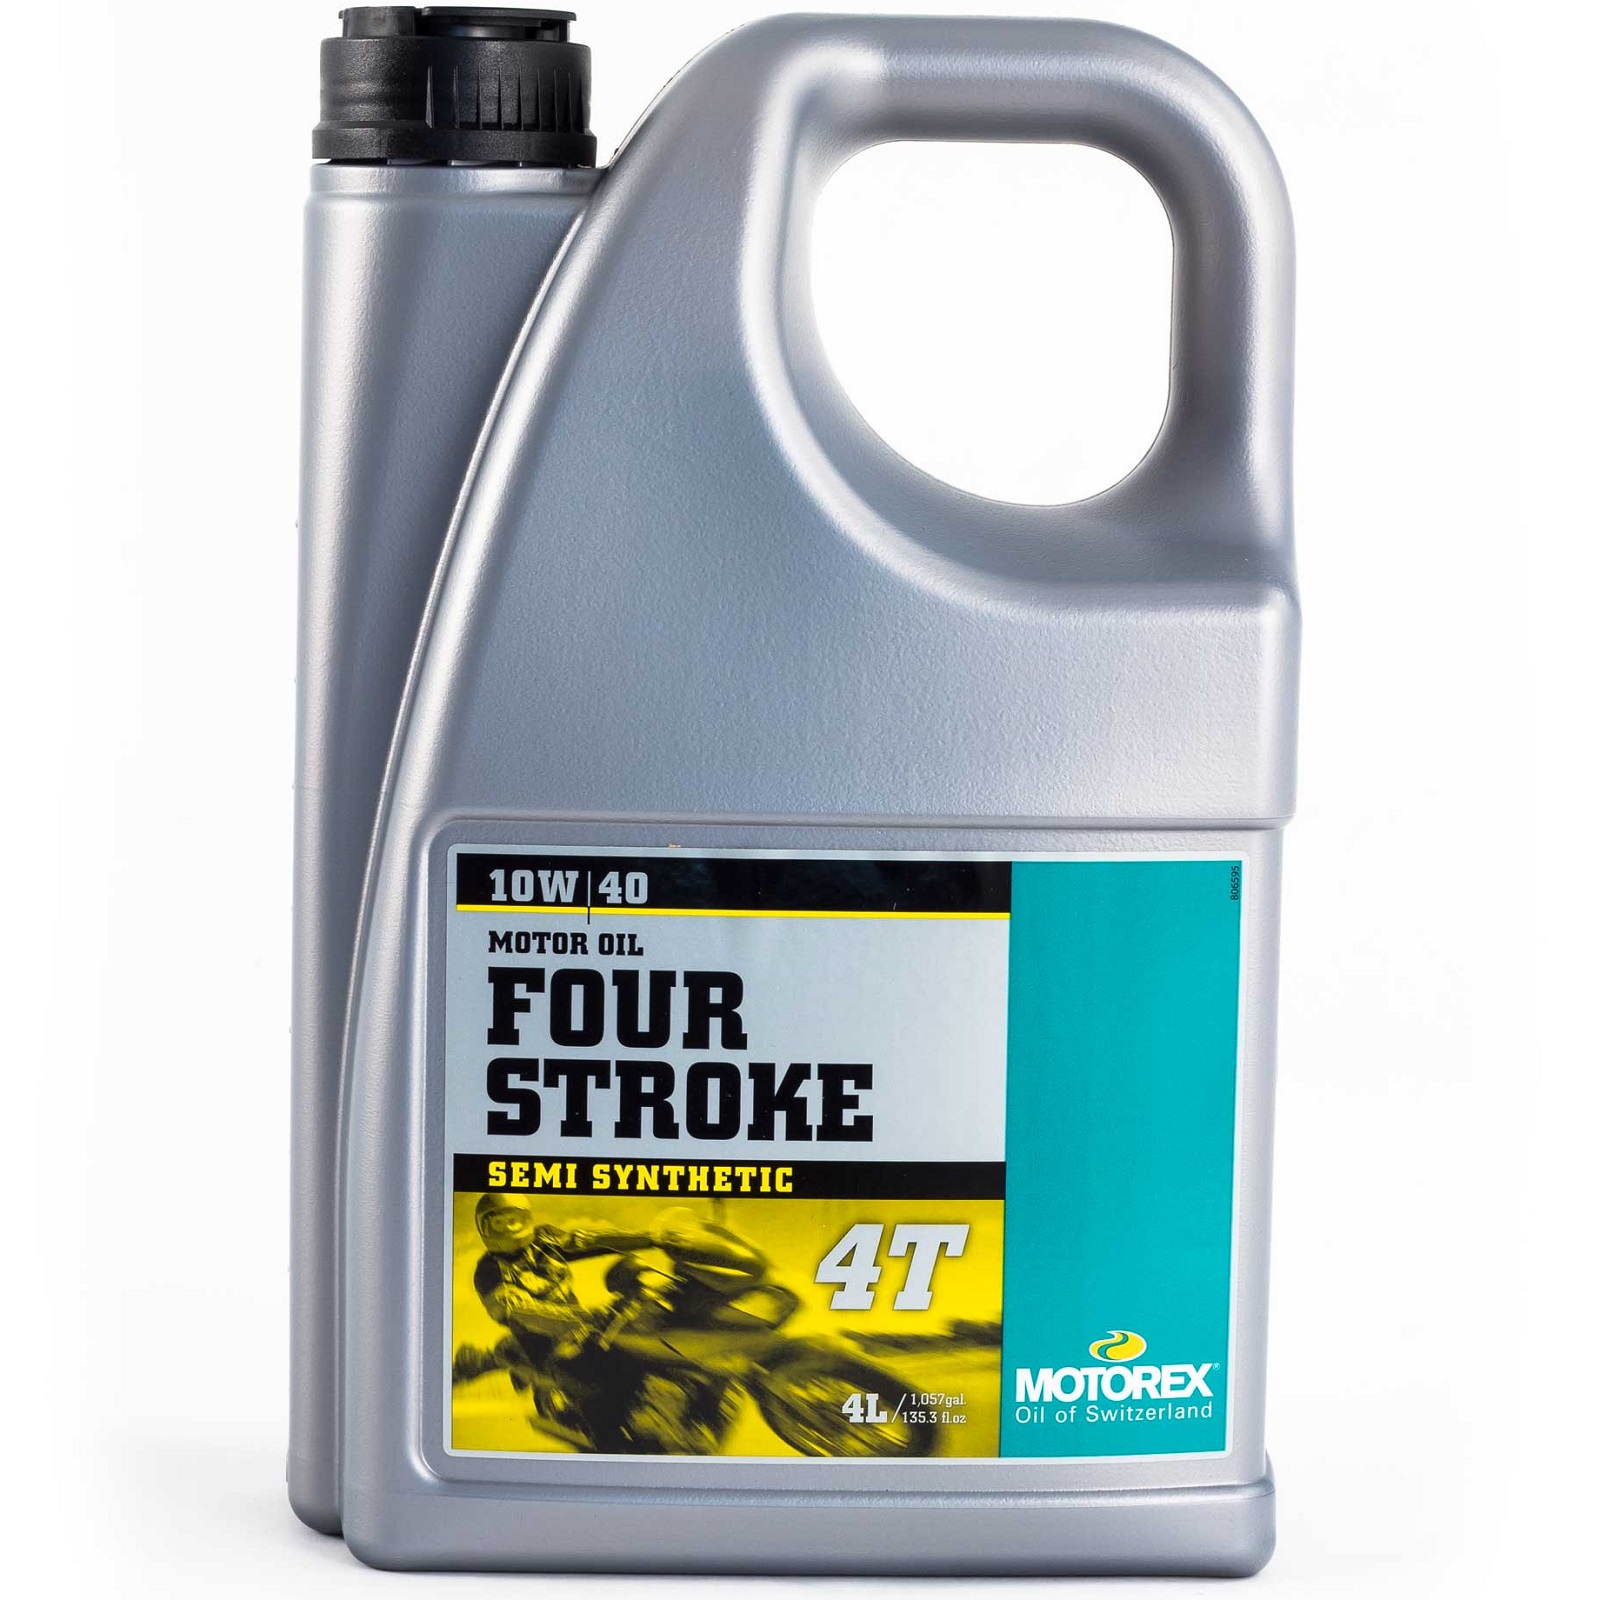 Motorex stroke oil